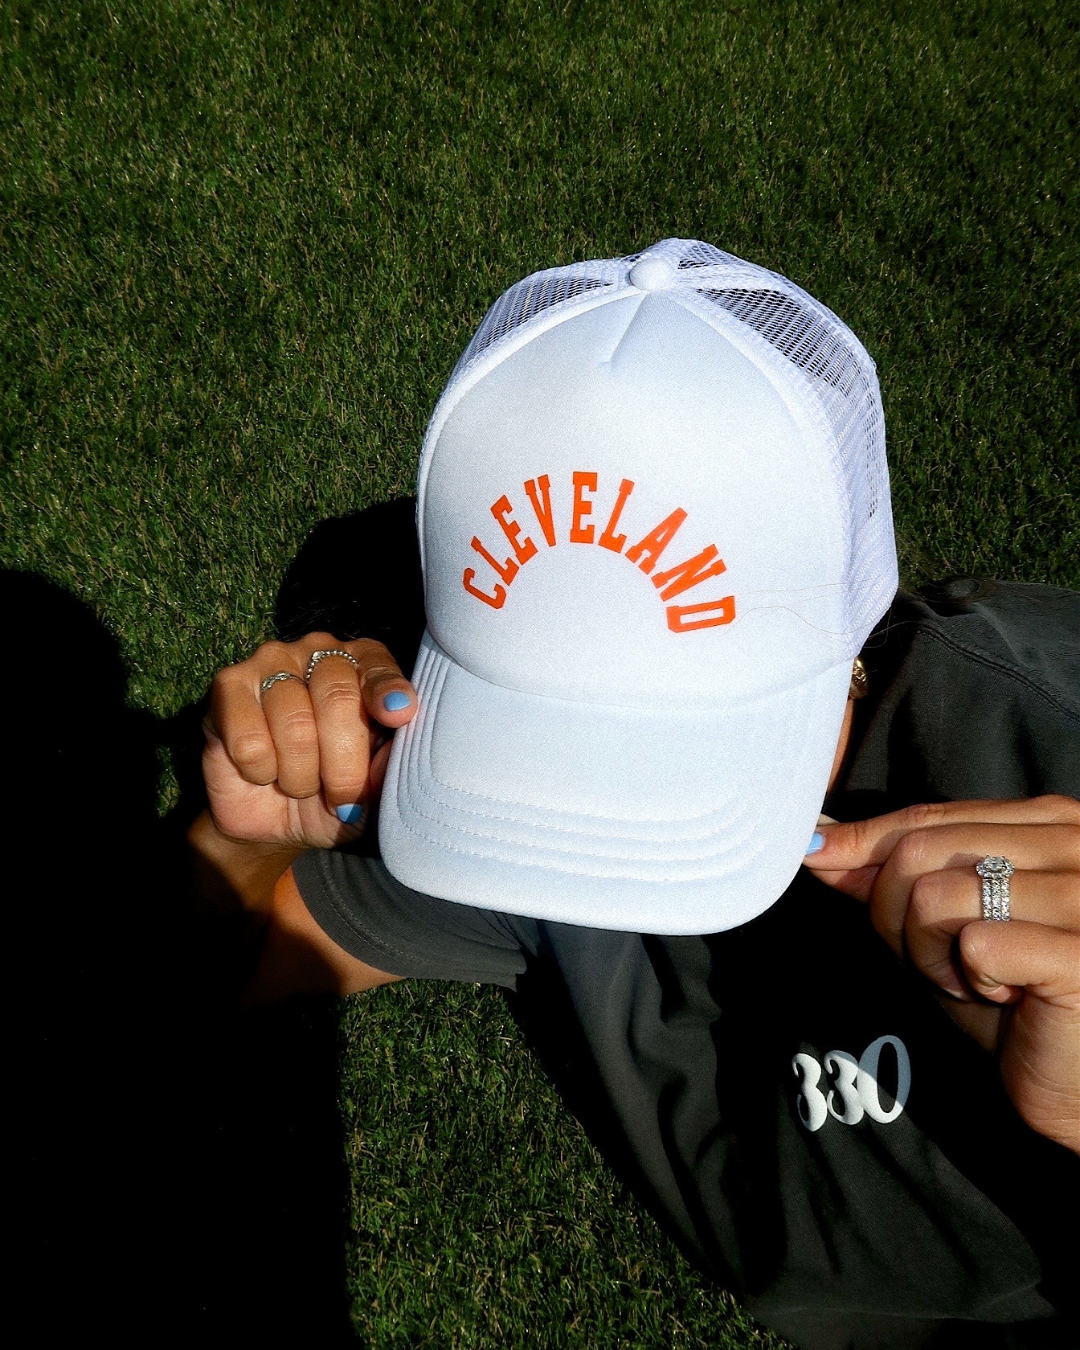 "CLEVELAND" Fan White & Orange Trucker Hat